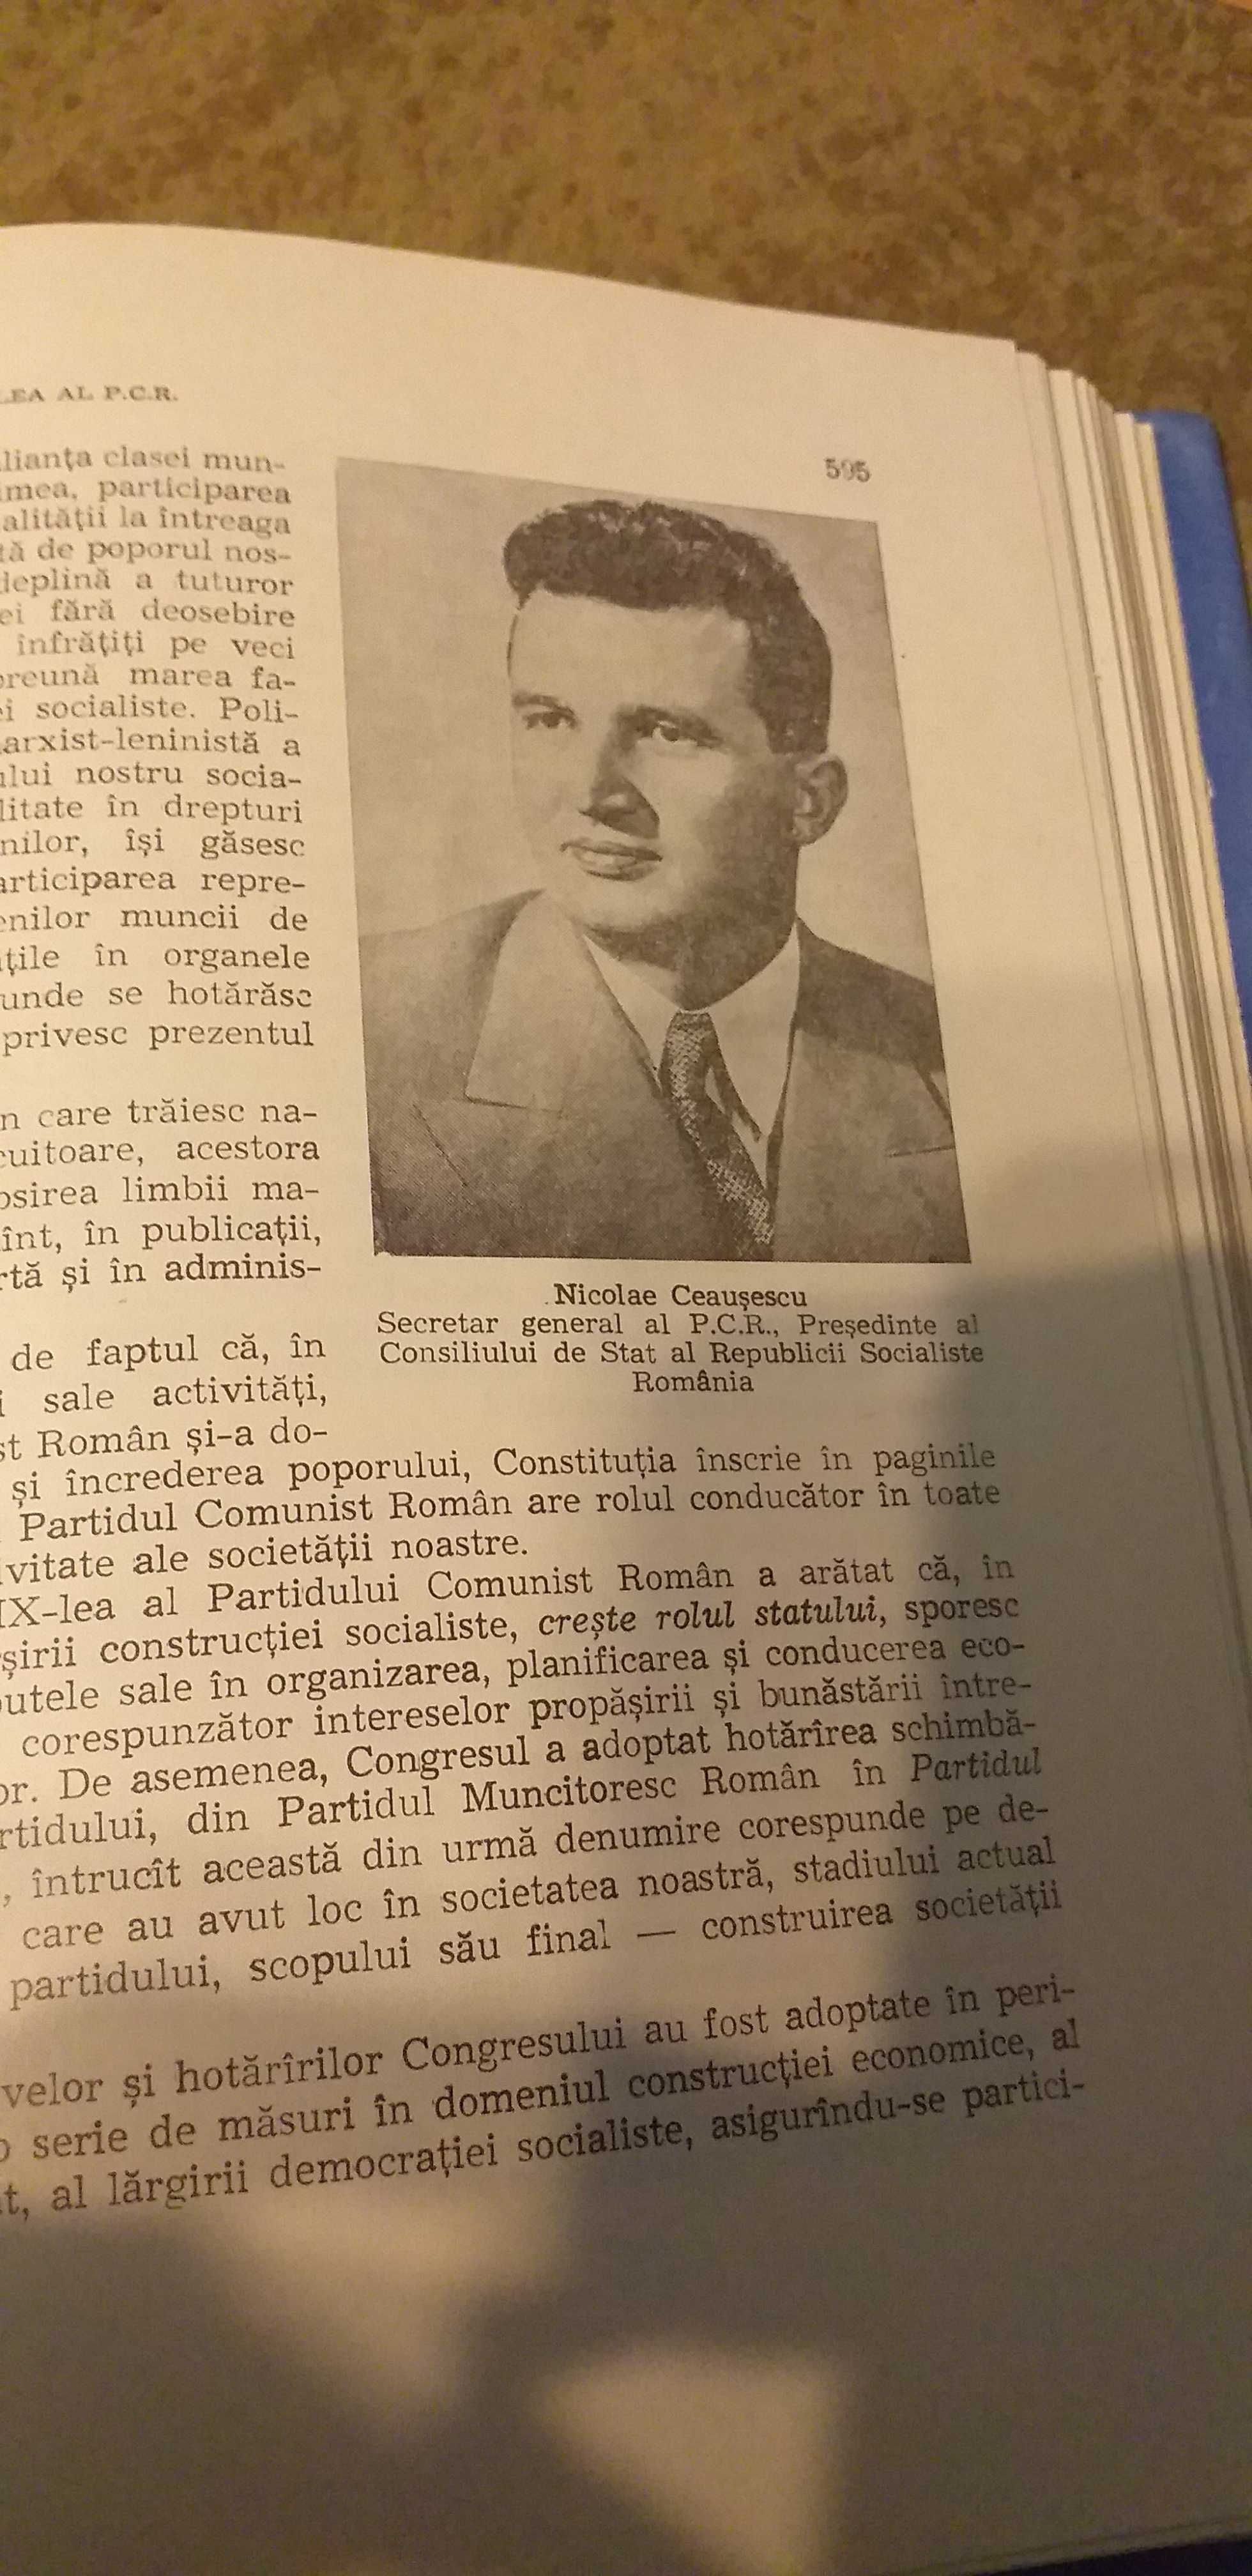 Carte excepțională "Istoria României"